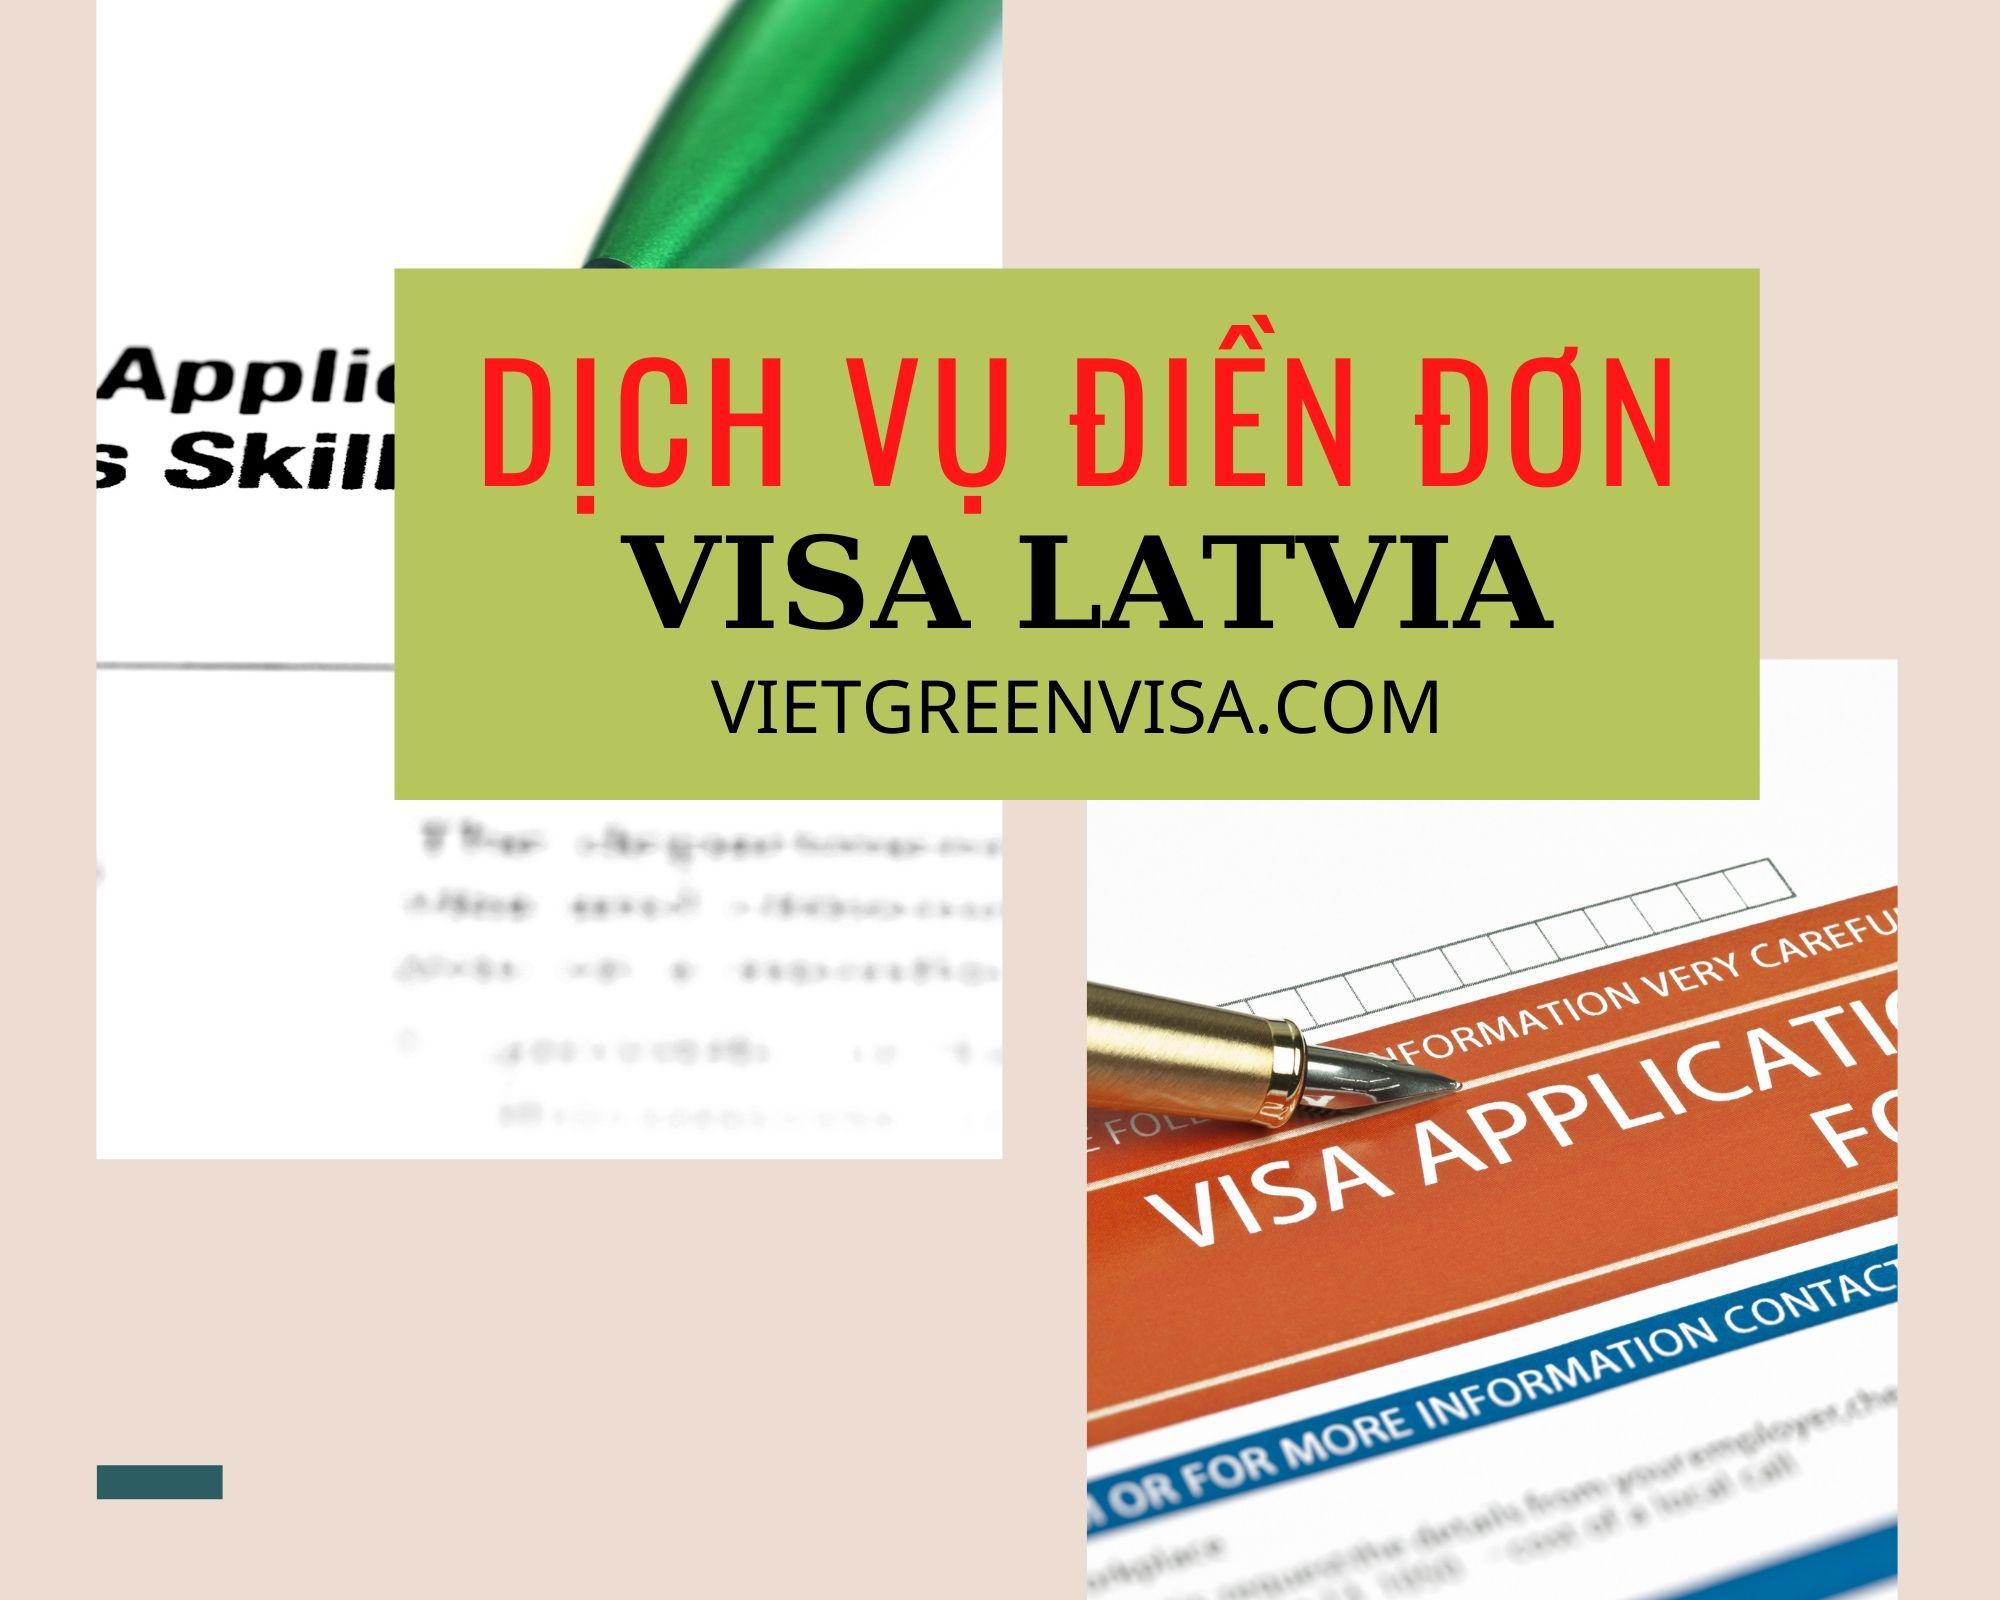 Dịch vụ điền đơn visa Latvia online nhanh